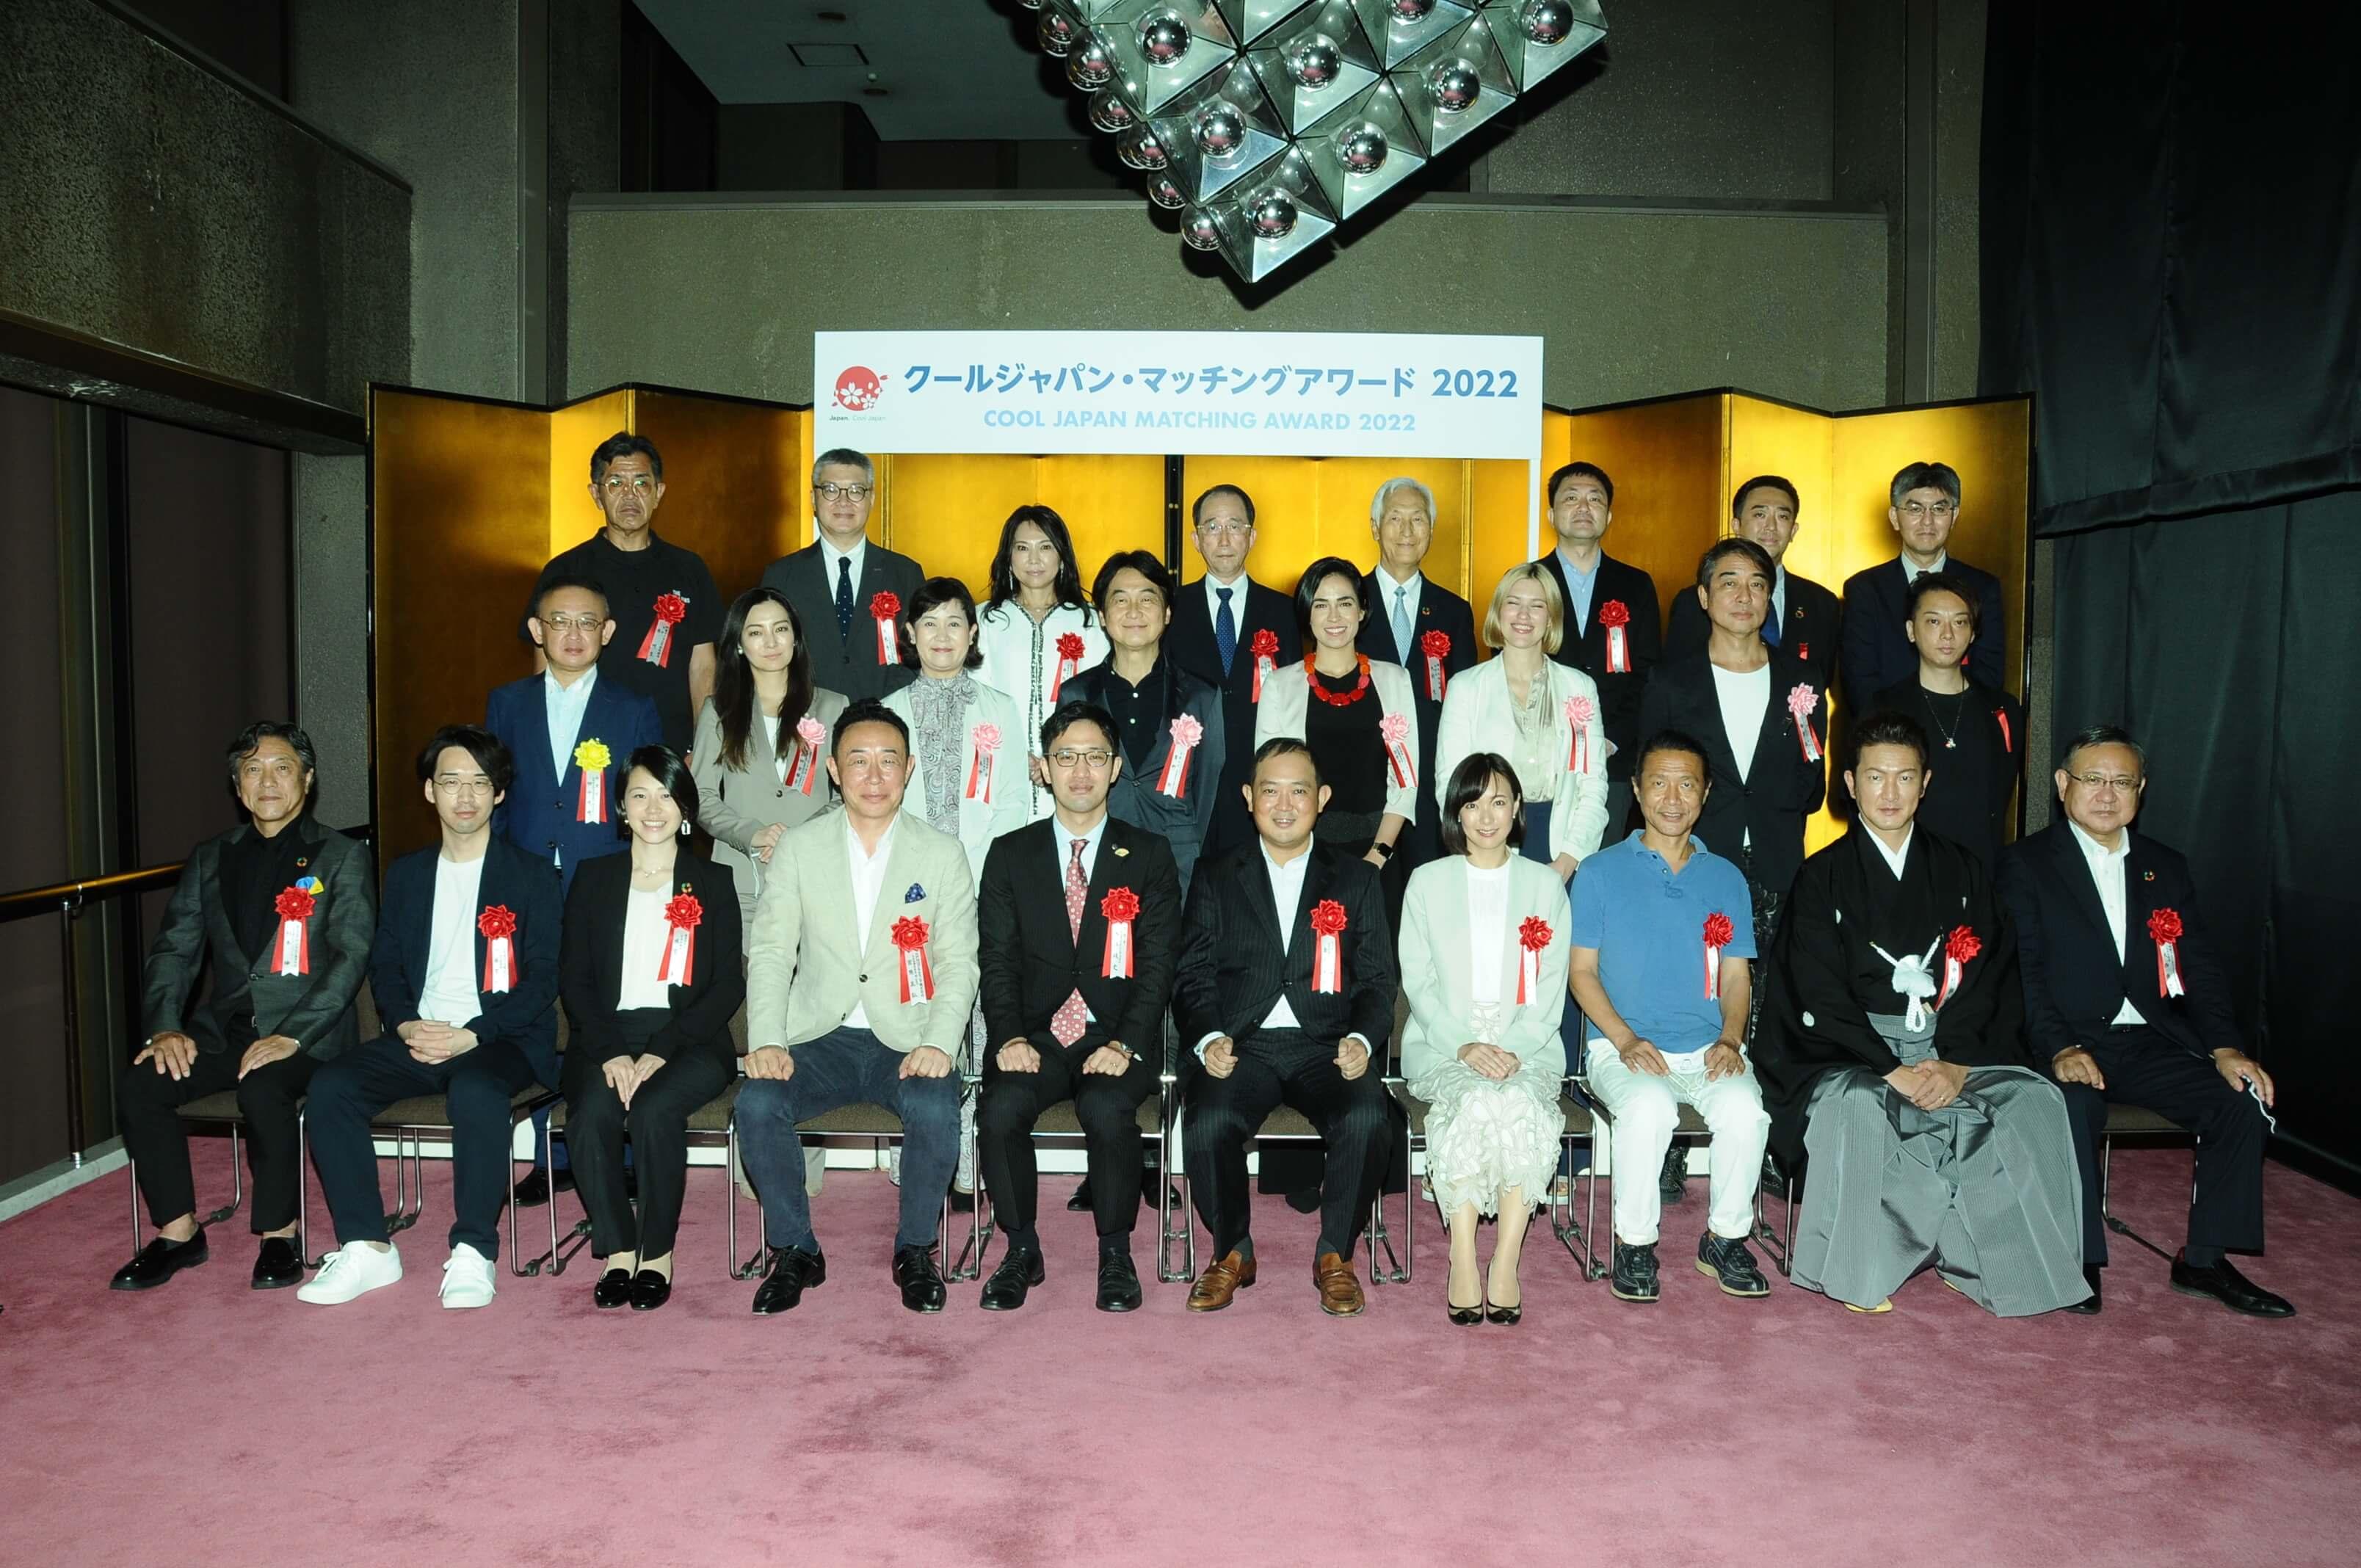 クールジャパン・マッチングアワード 2022の準グランプリを受賞